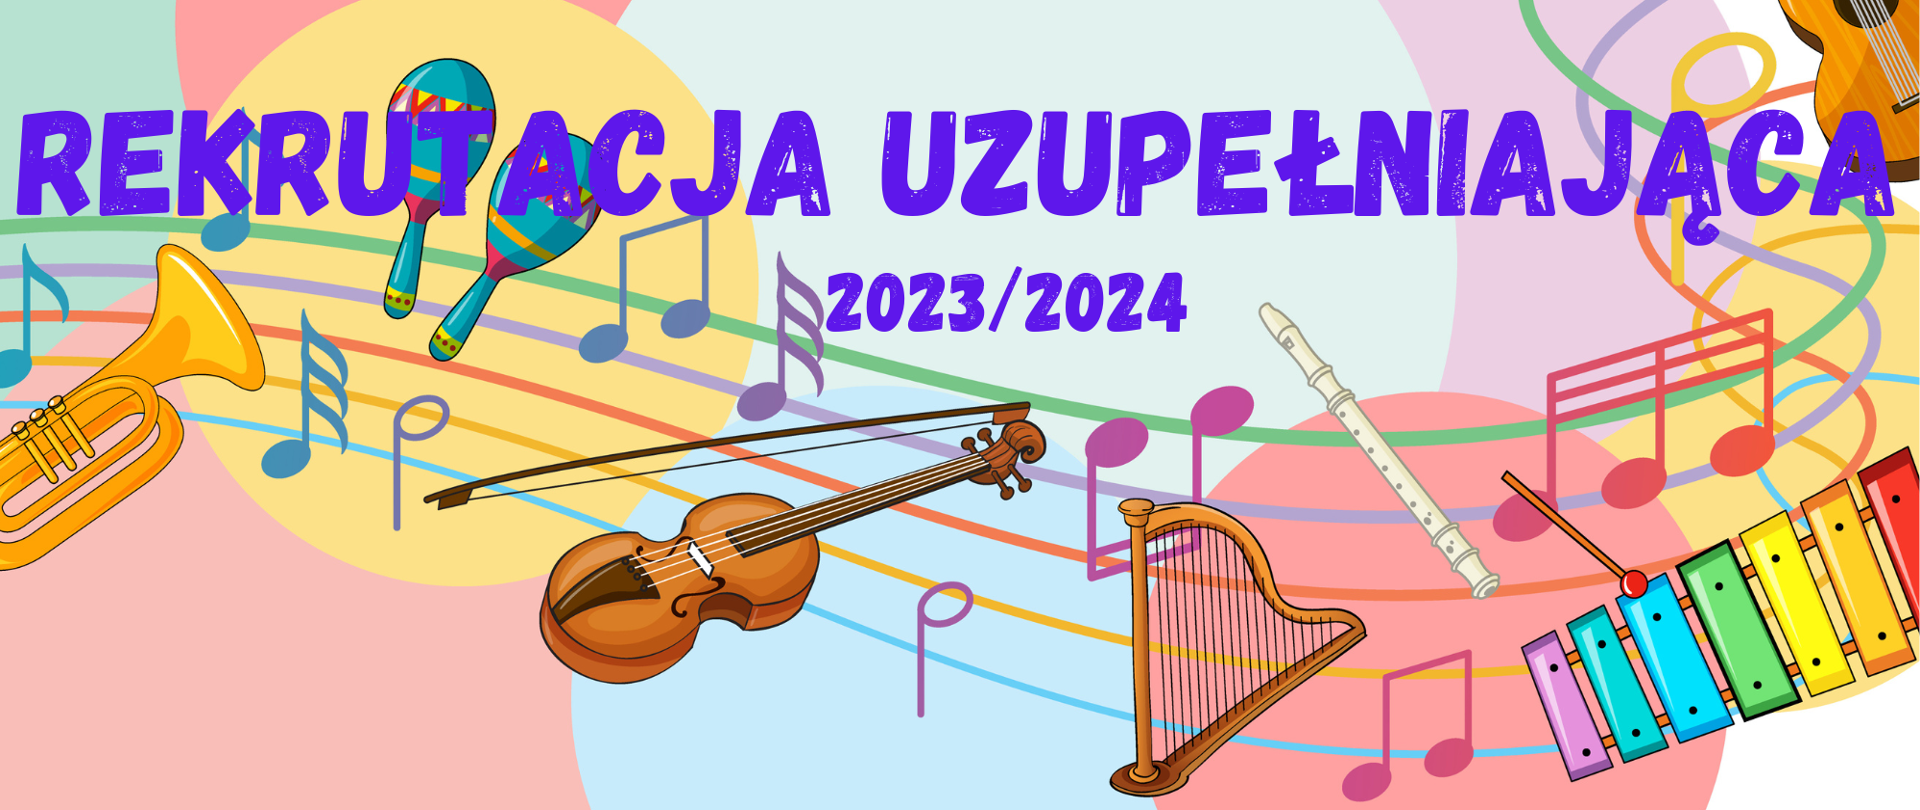 Kolorowa grafika przedstawiająca instrumenty muzyczne i pięciolinię z nutami na tle elementów w formie wielobarwnych kół. Na grafice napis: "REKRUTACJA UZUPEŁNIAJĄCA 2023/2024" w kolorze granatowym.